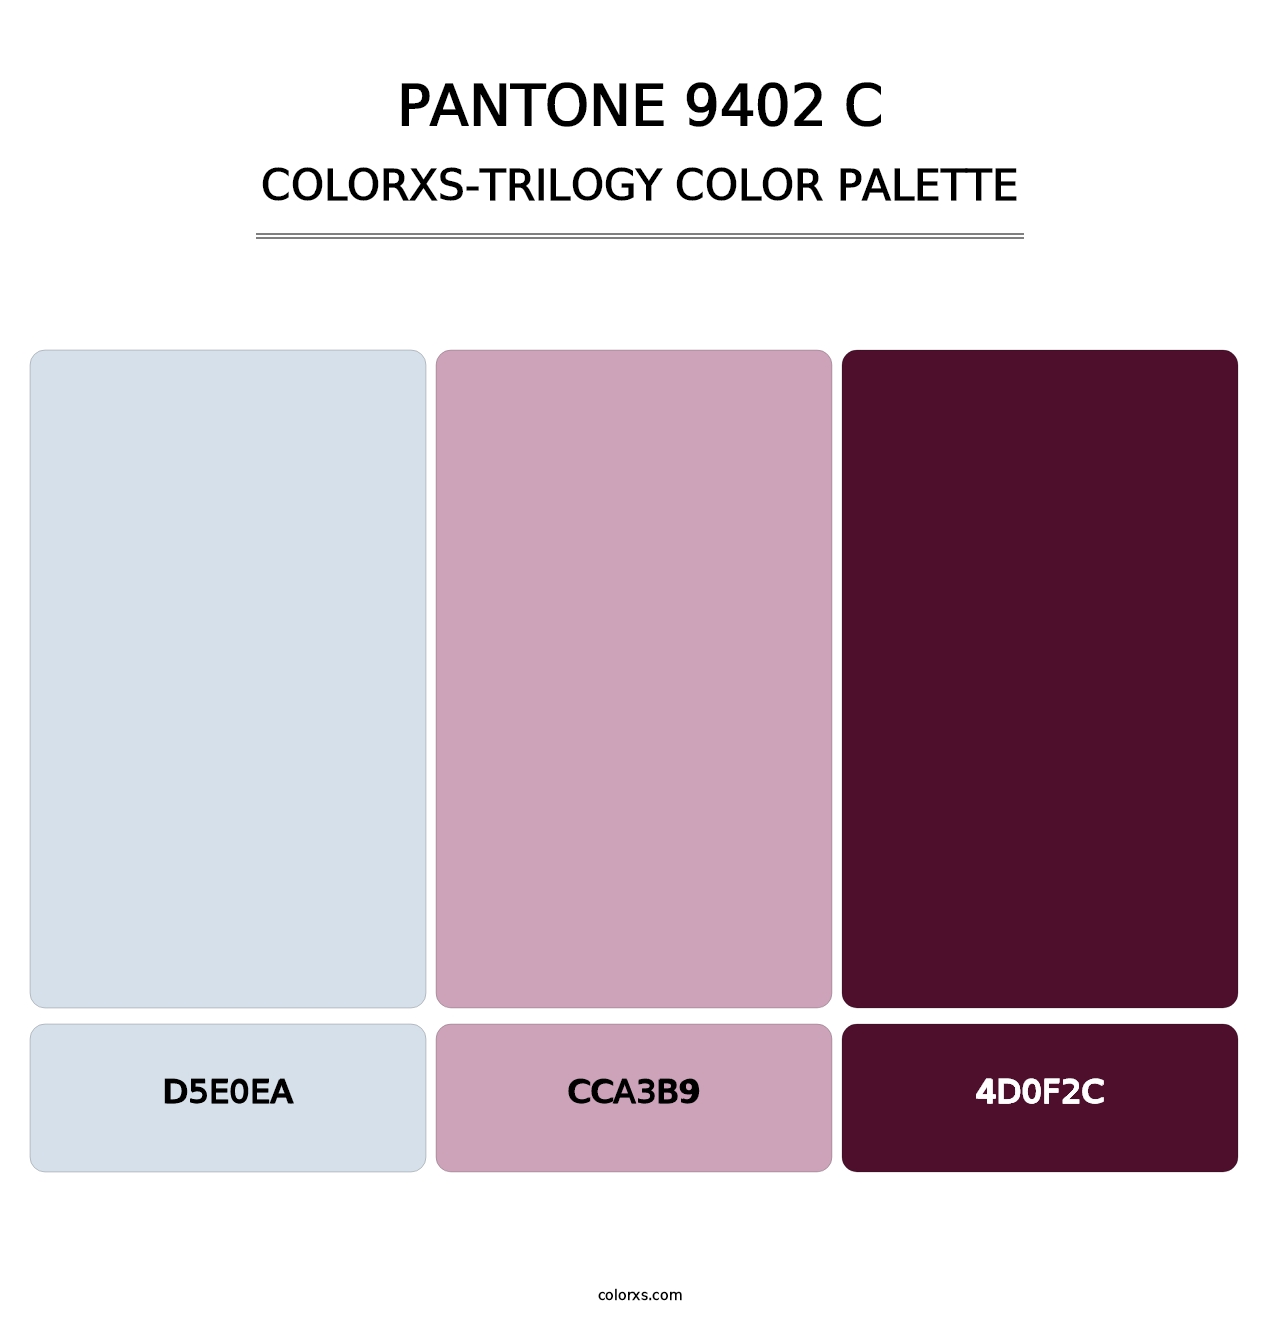 PANTONE 9402 C - Colorxs Trilogy Palette